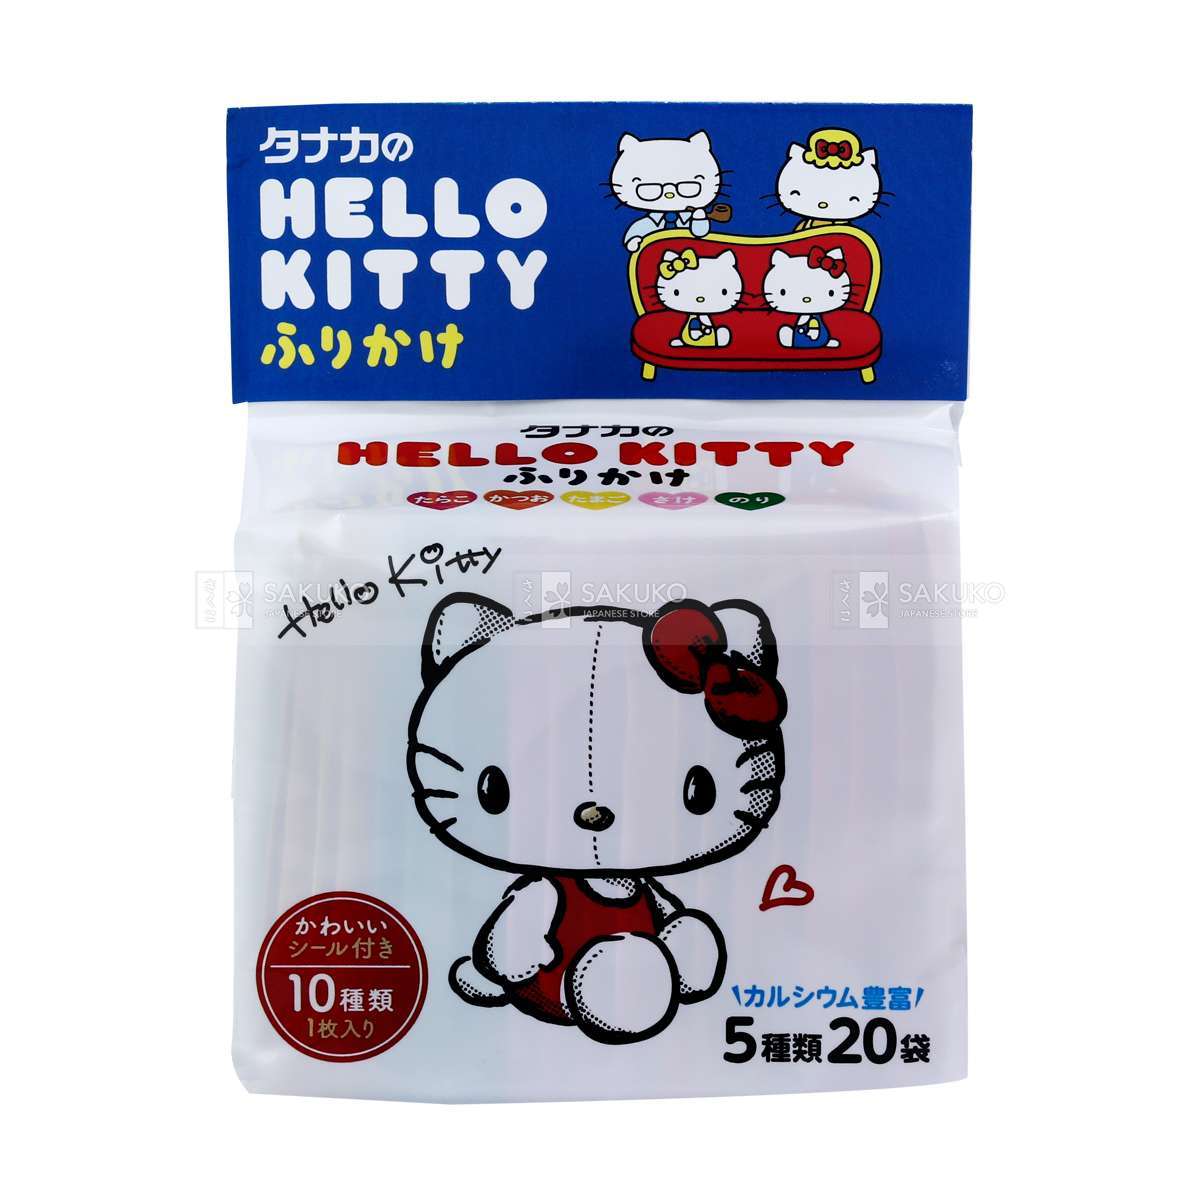 Gia vị rắc cơm Hello Kitty Sanrio 5 vị Nhật Bản 48g - 20 gói (cho bé từ 9 tháng tuổi)